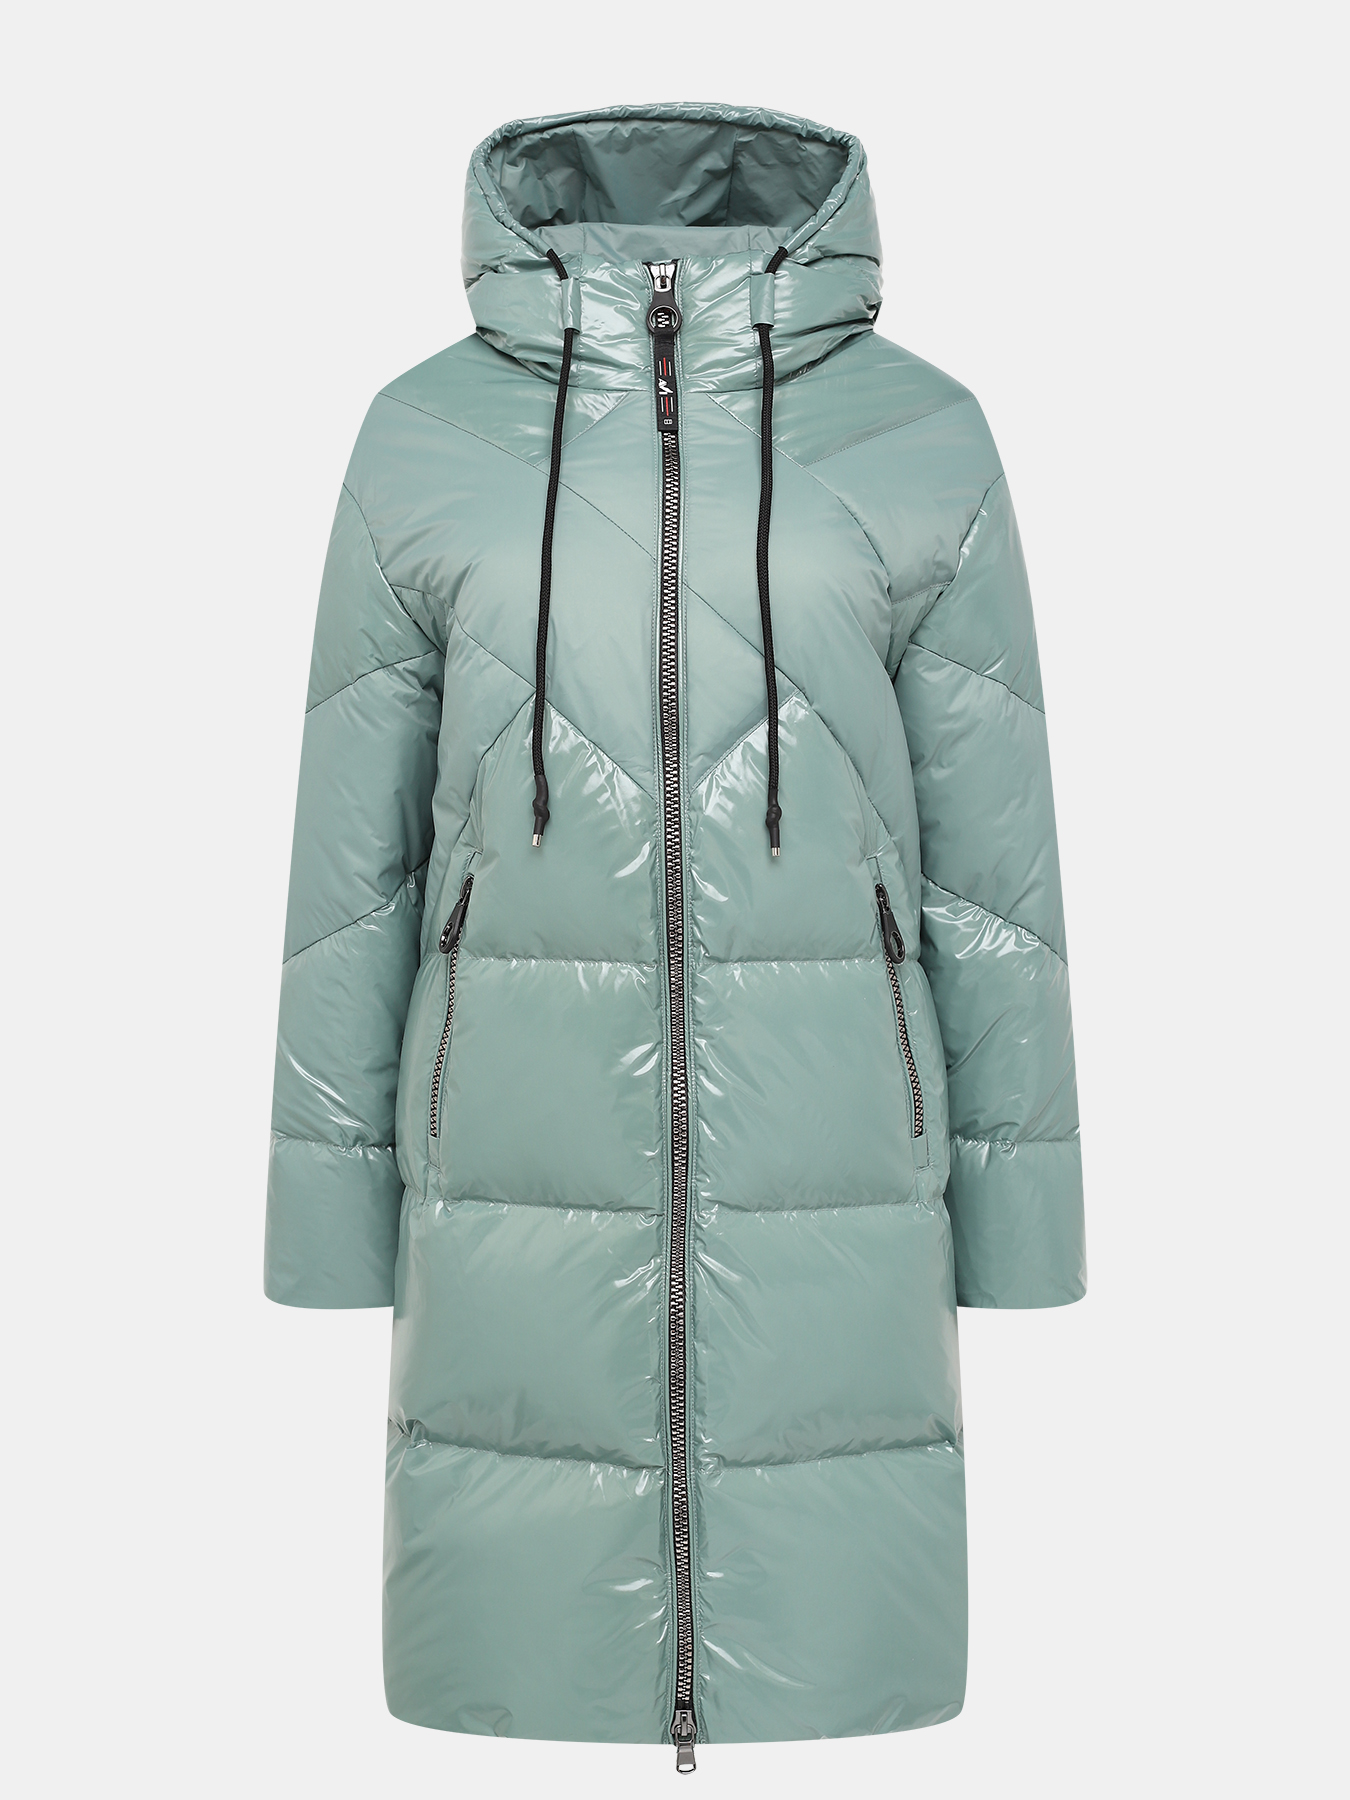 Пальто зимнее AVI 433635-022, цвет мятный, размер 48